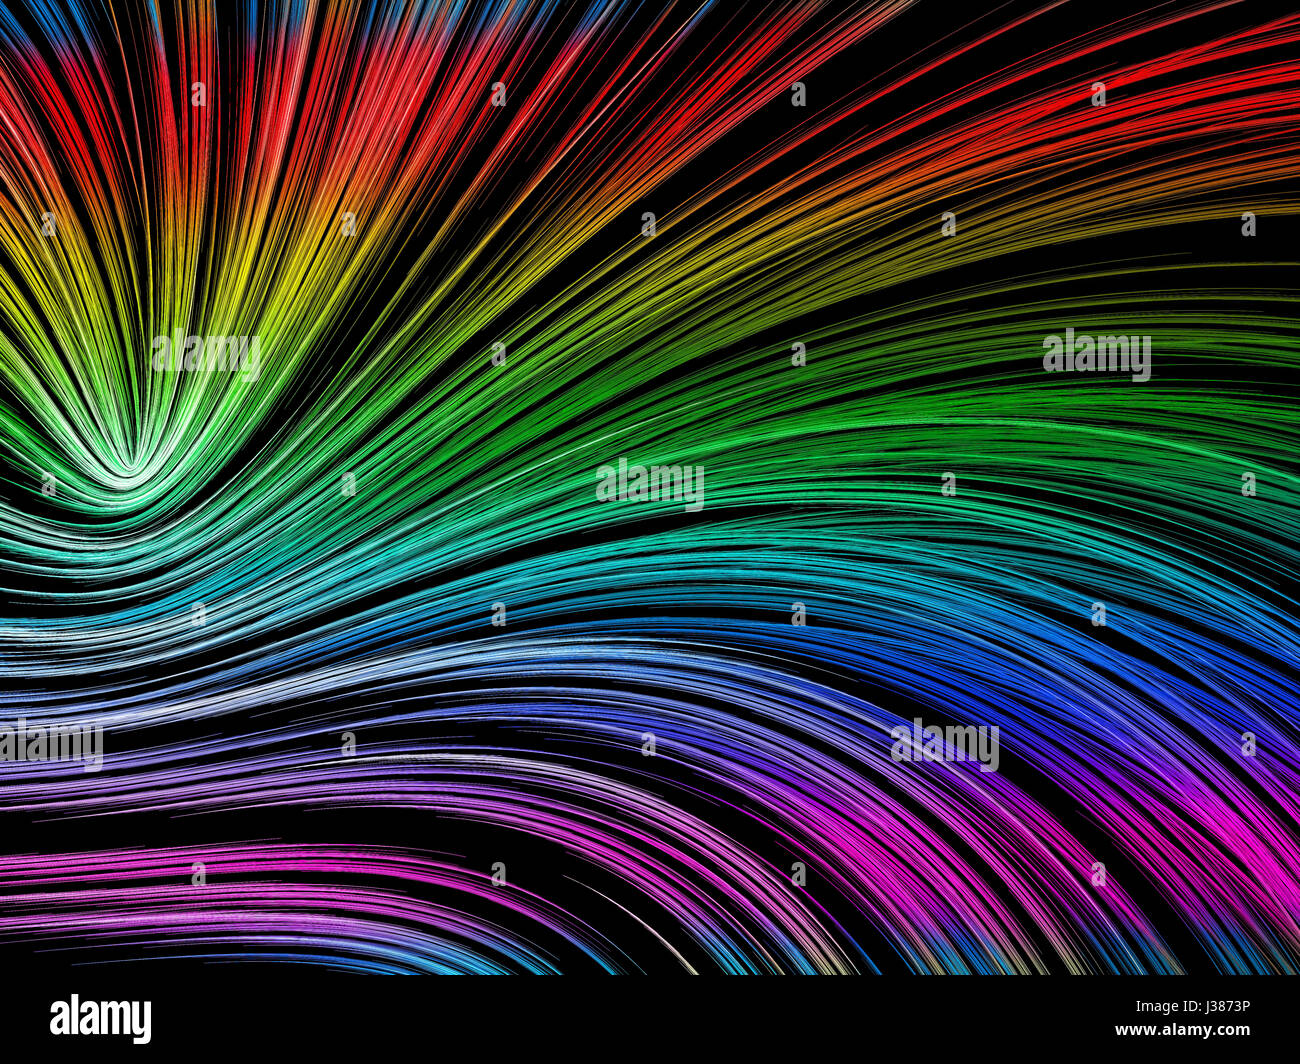 Arrière-plan coloré ondulé - abstract image générée numériquement Banque D'Images